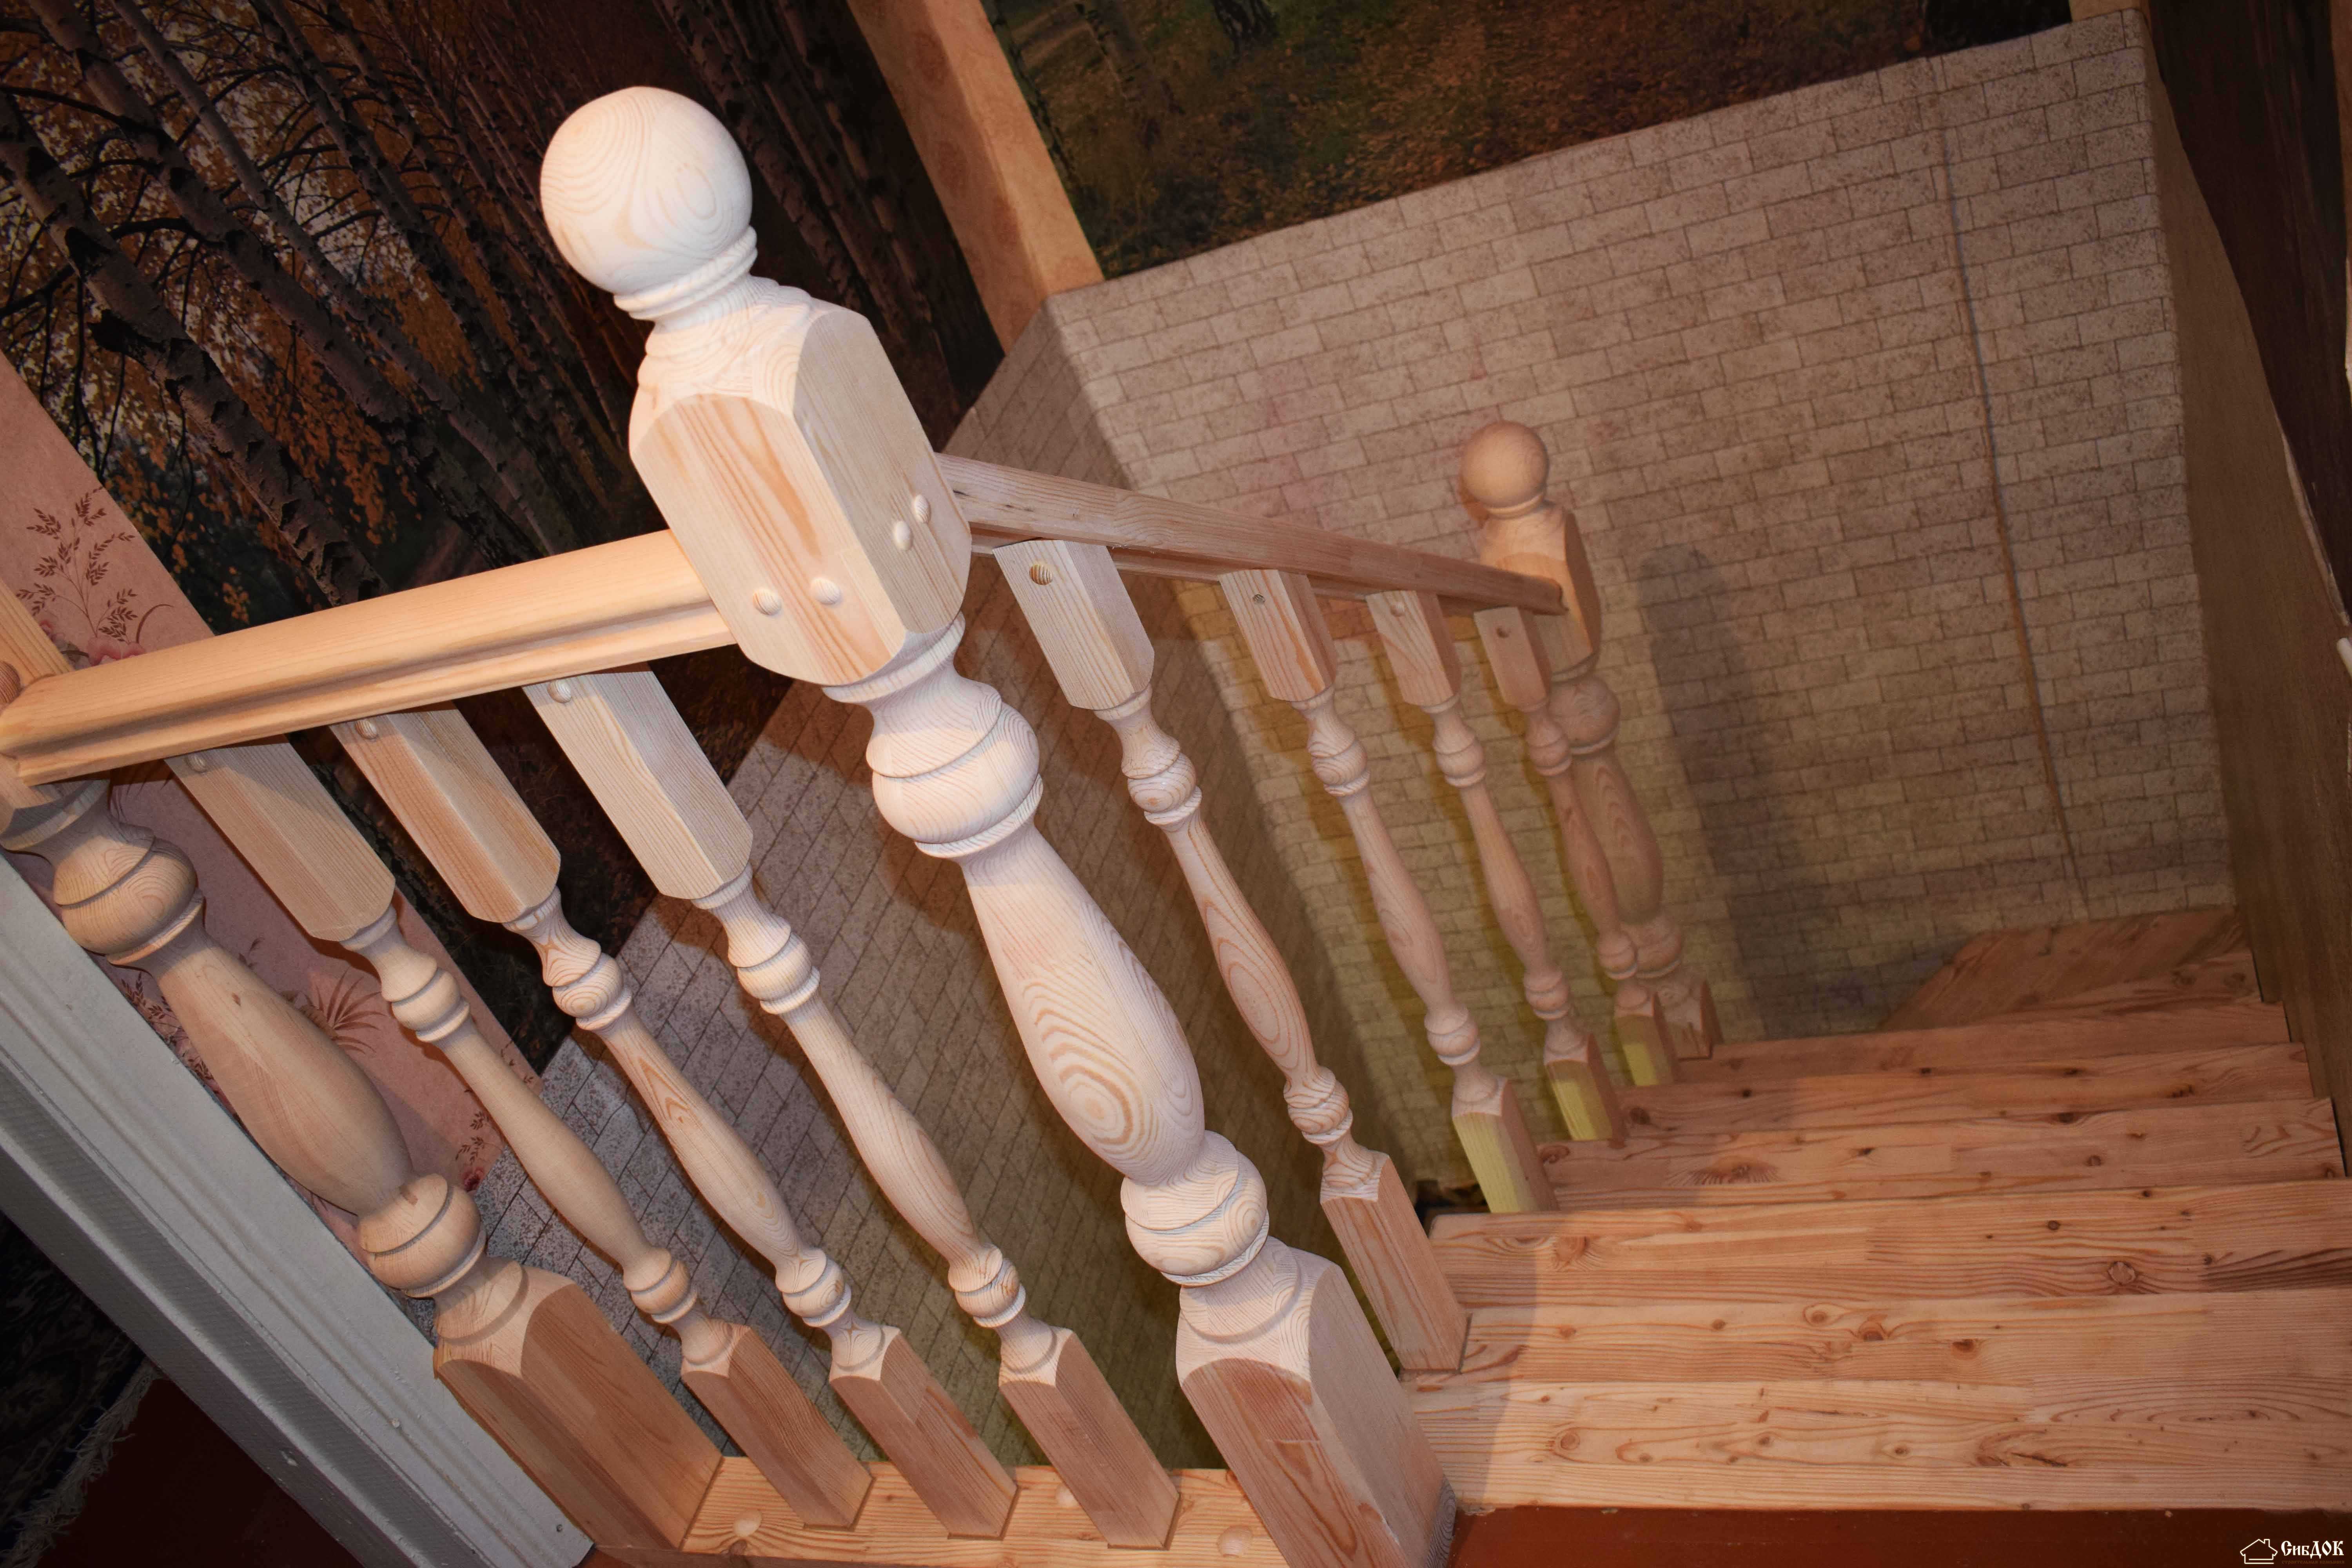 Как крепить балясины? крепление к деревянной лестнице своими руками, как устанавливать на тетиву, как и чем прикрепить к полу, ступеням и перилам